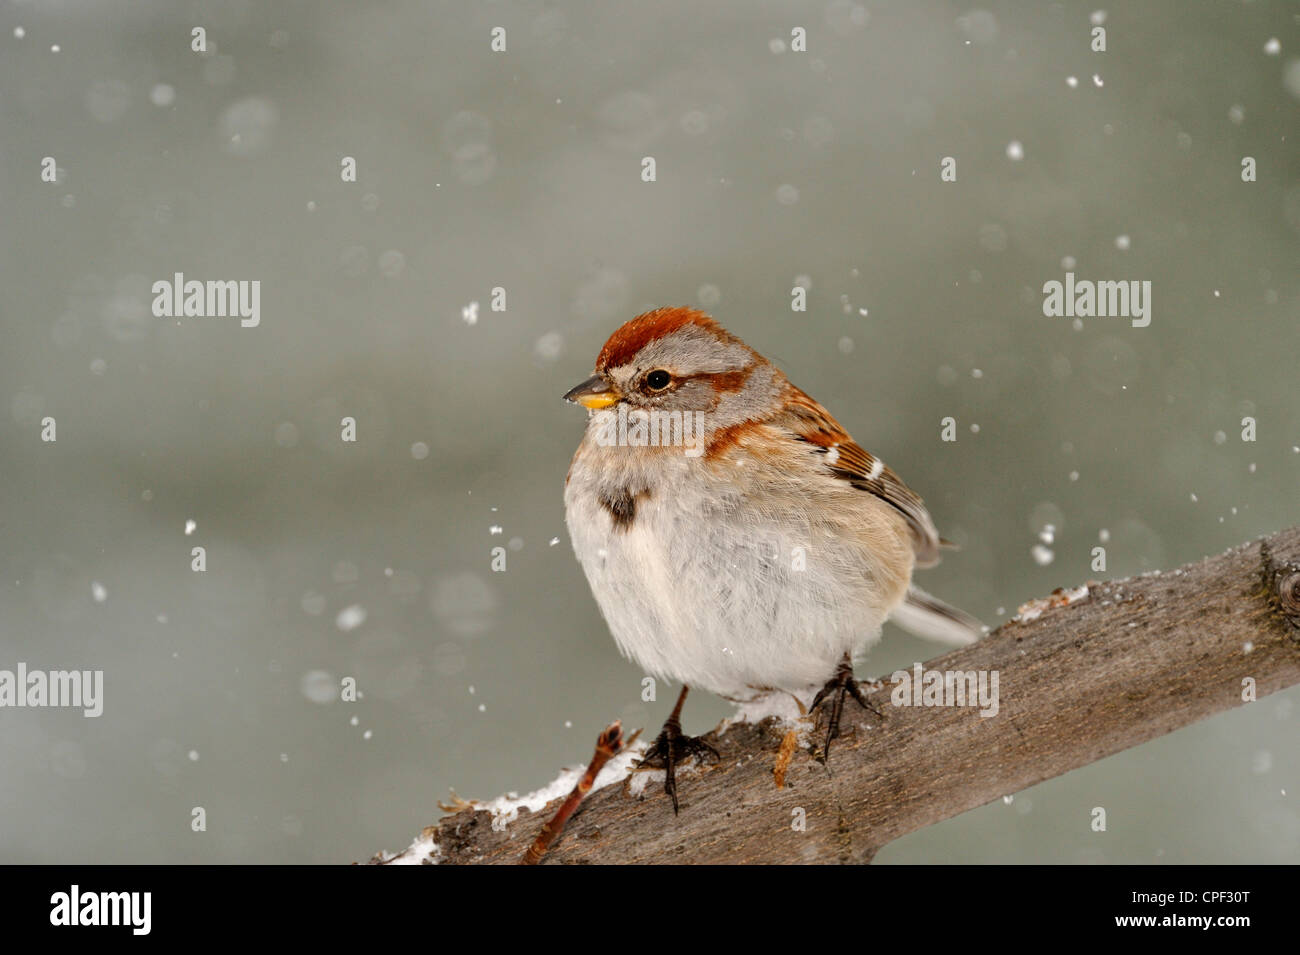 American Tree Sparrow (Spizella arborea), Greater Sudbury, Ontario, Canada Stock Photo